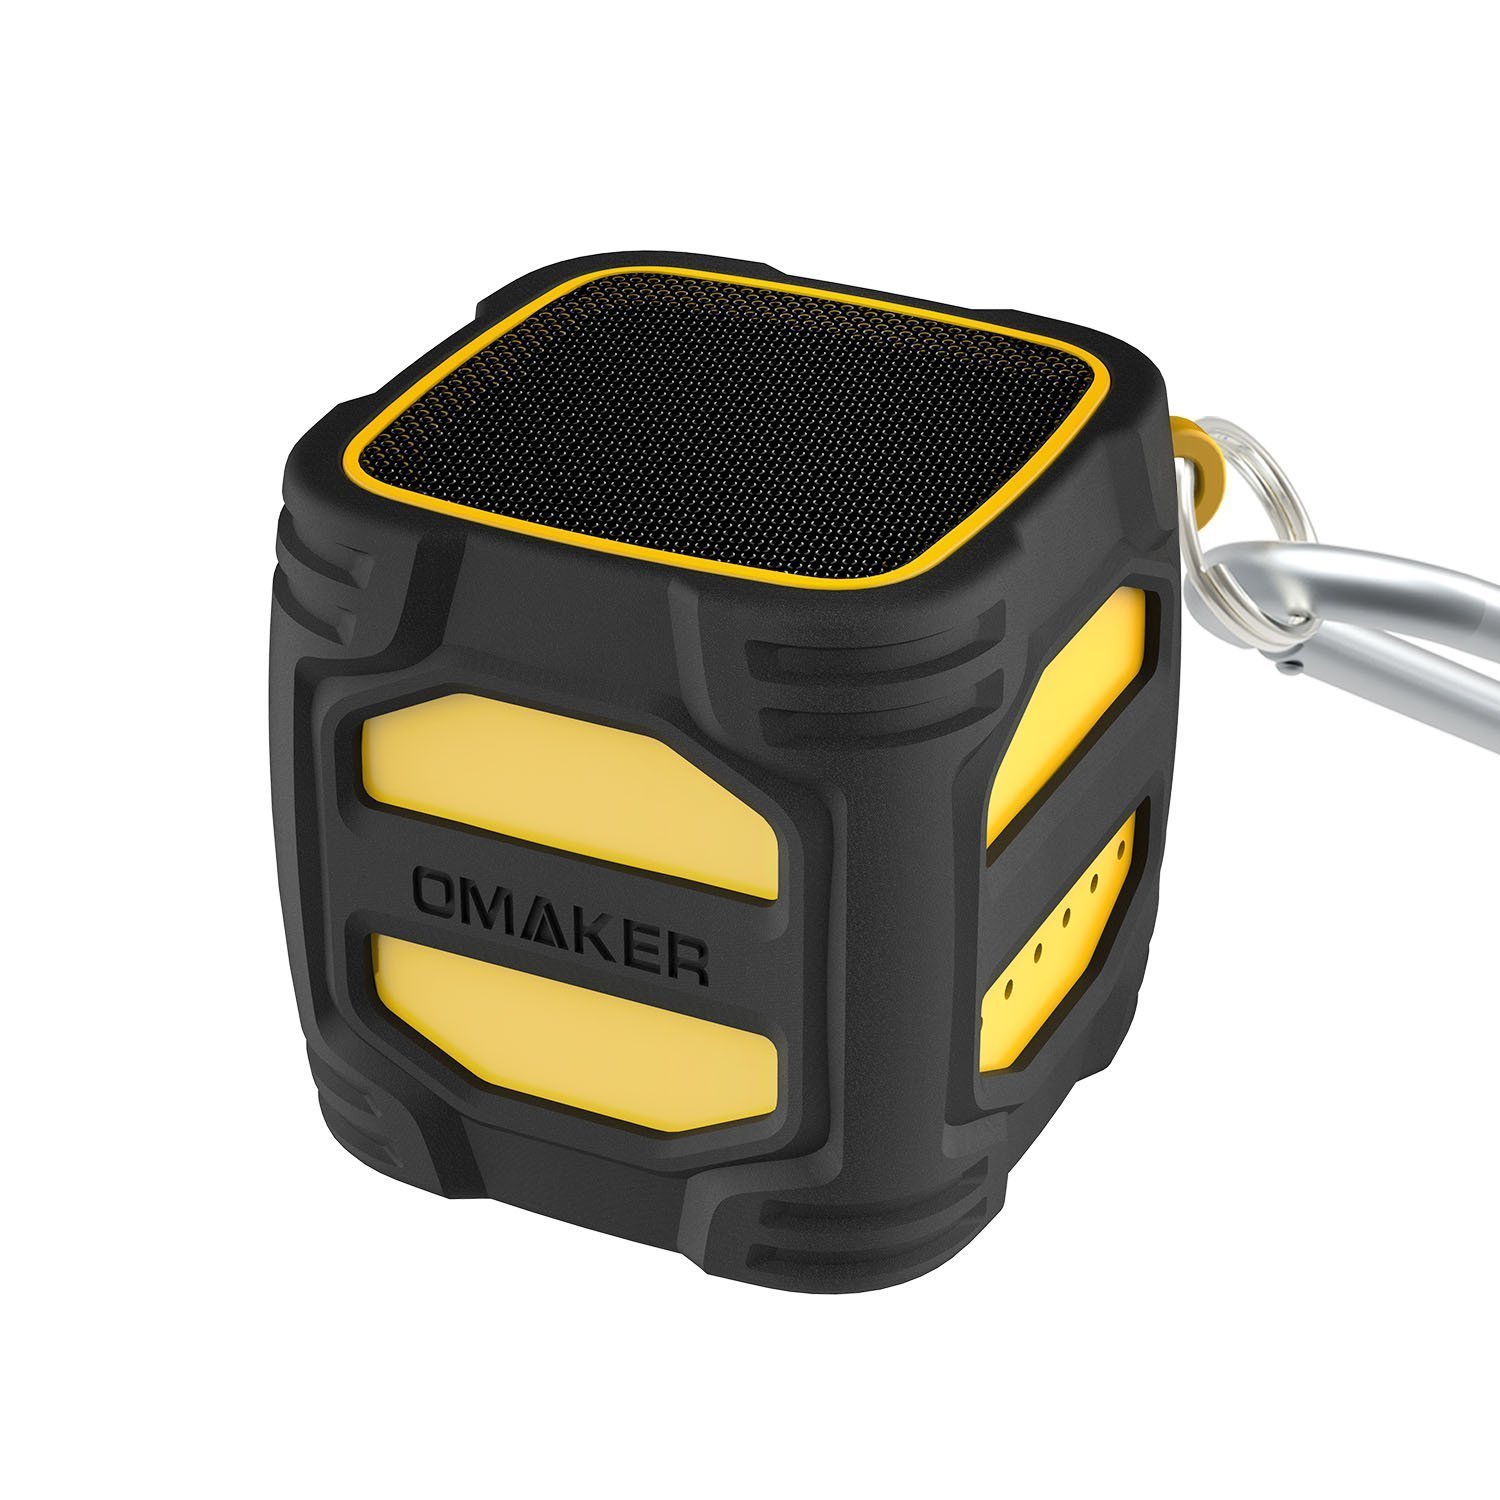 【セール】Omaker Bluetoothスピーカー 小型/爆音/クールデザイン（3m落下テスト済み/12時間連続再生可能）キューブサイズ